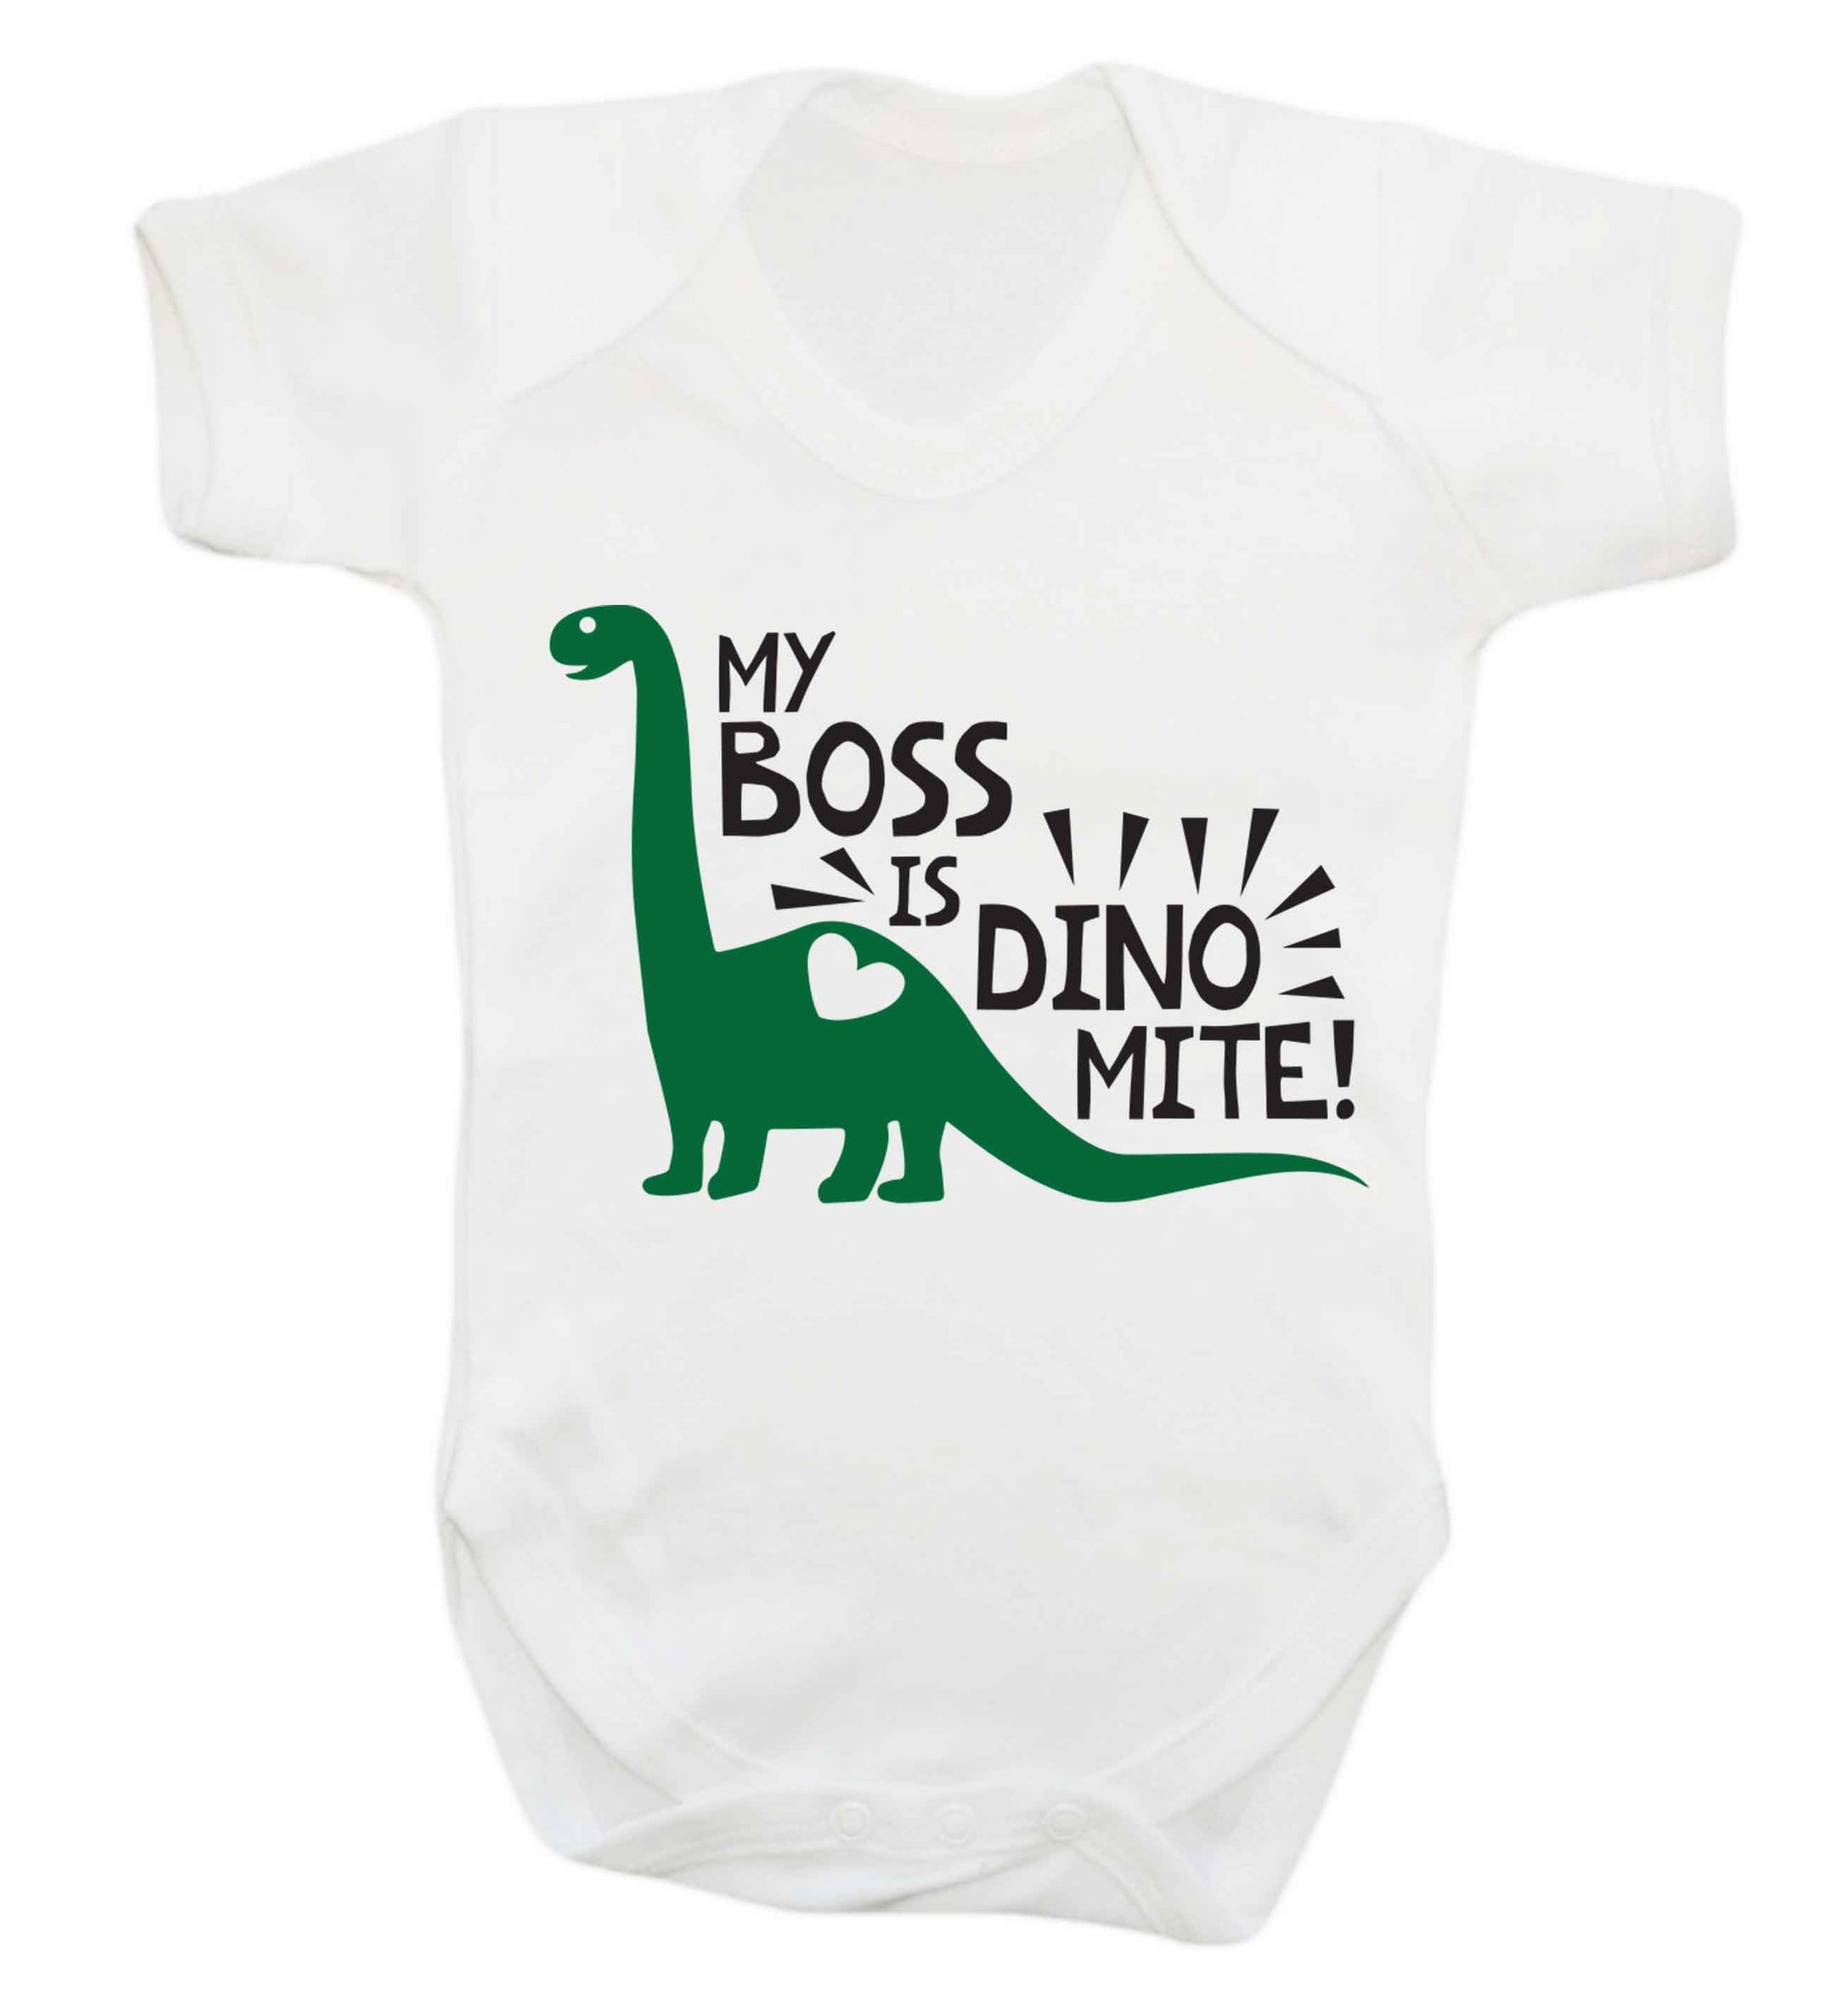 My boss is dinomite! Baby Vest white 18-24 months